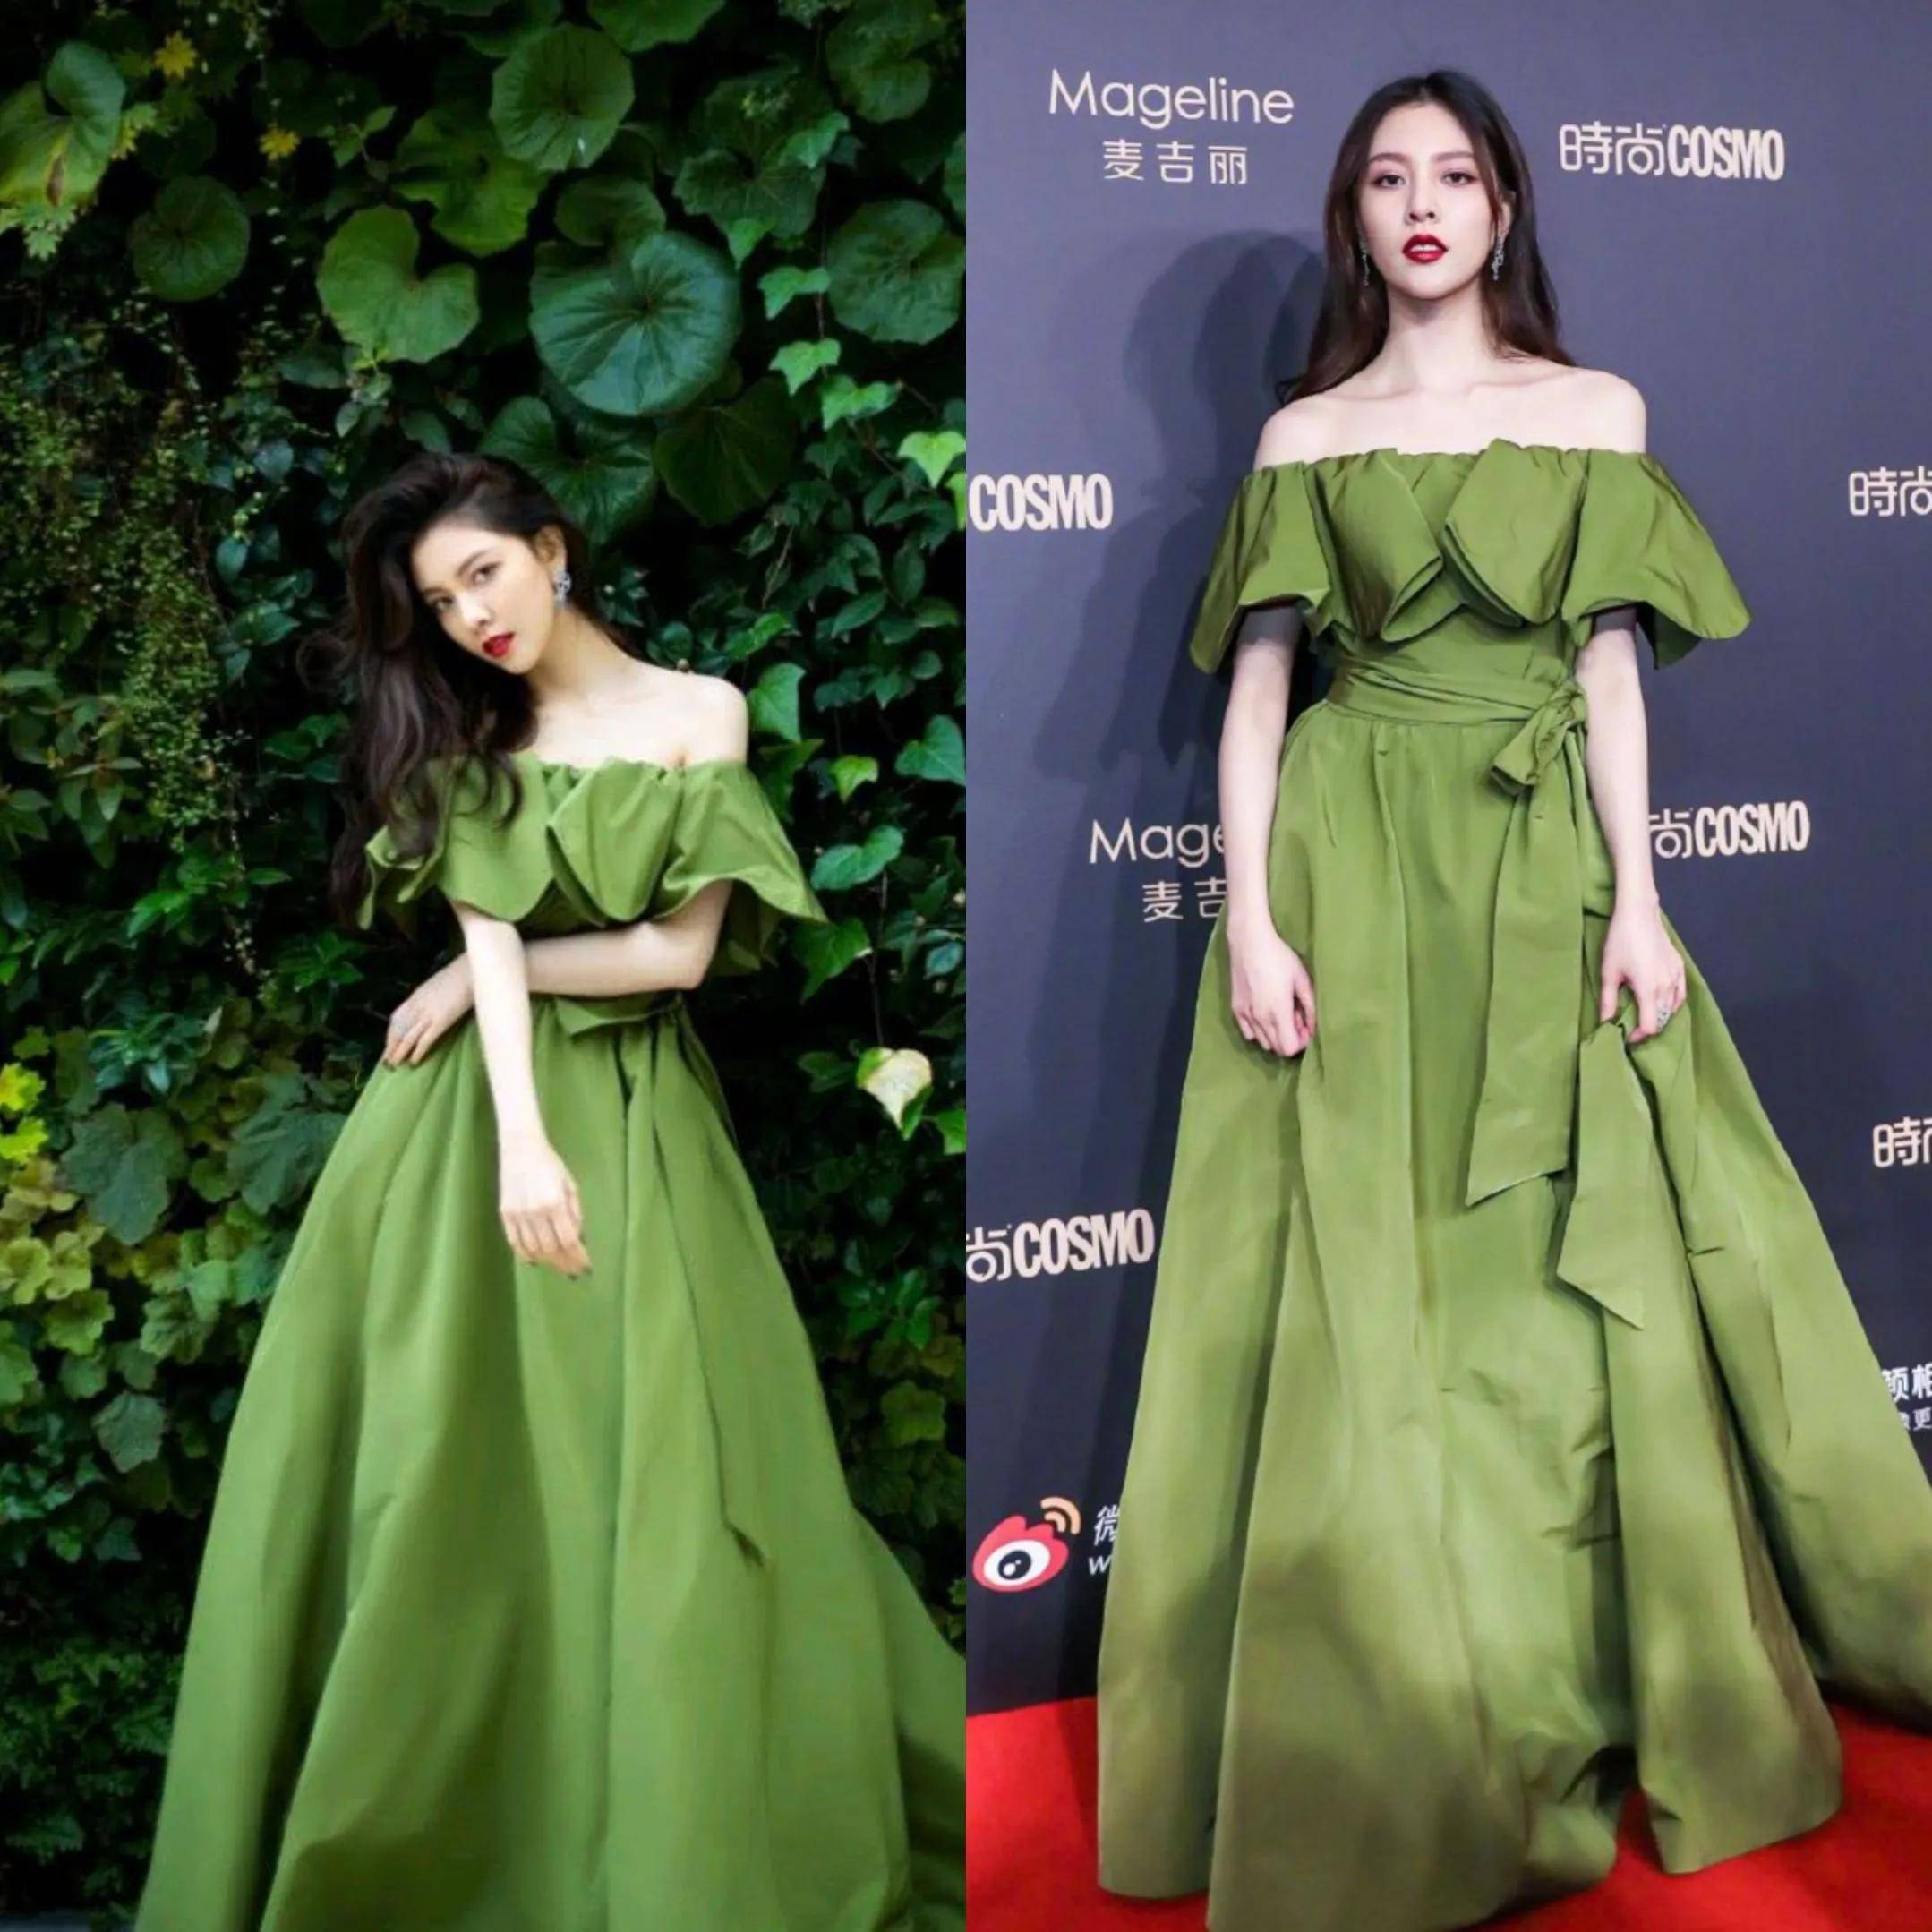 「绿色系列」当个明星穿起绿色衣服,哪一个更好看呢